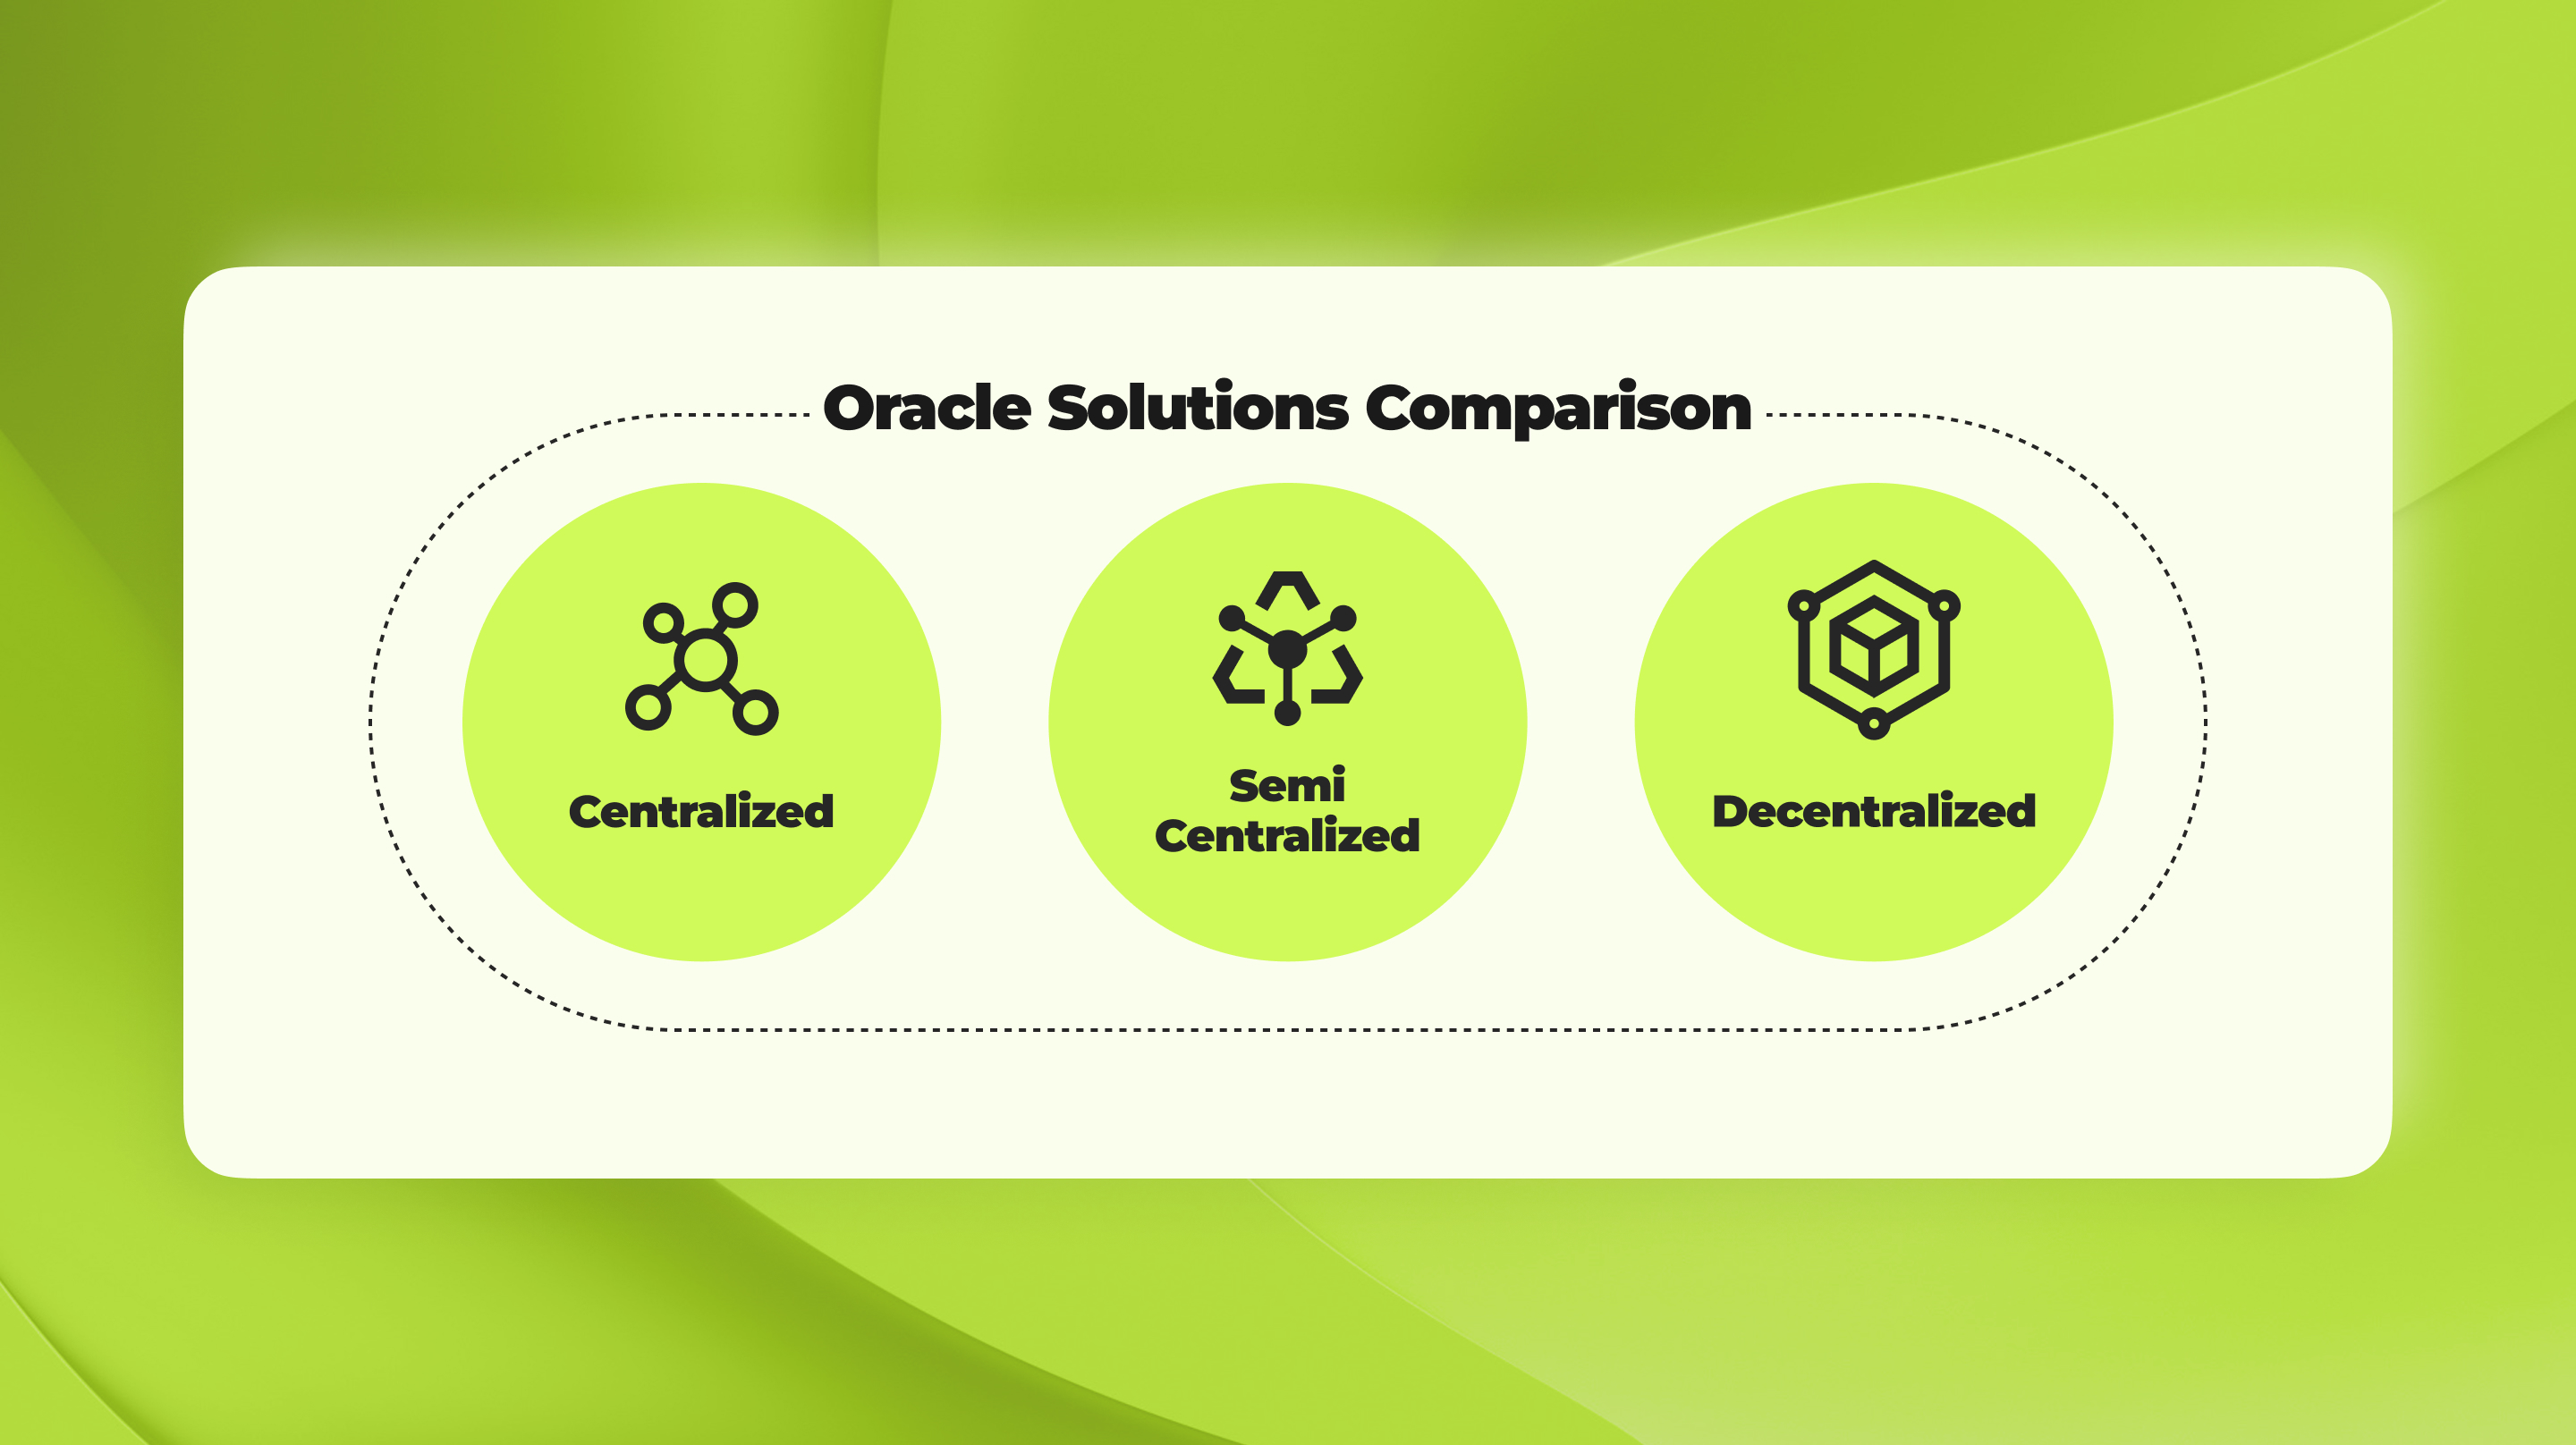 Oracles solution comparison.